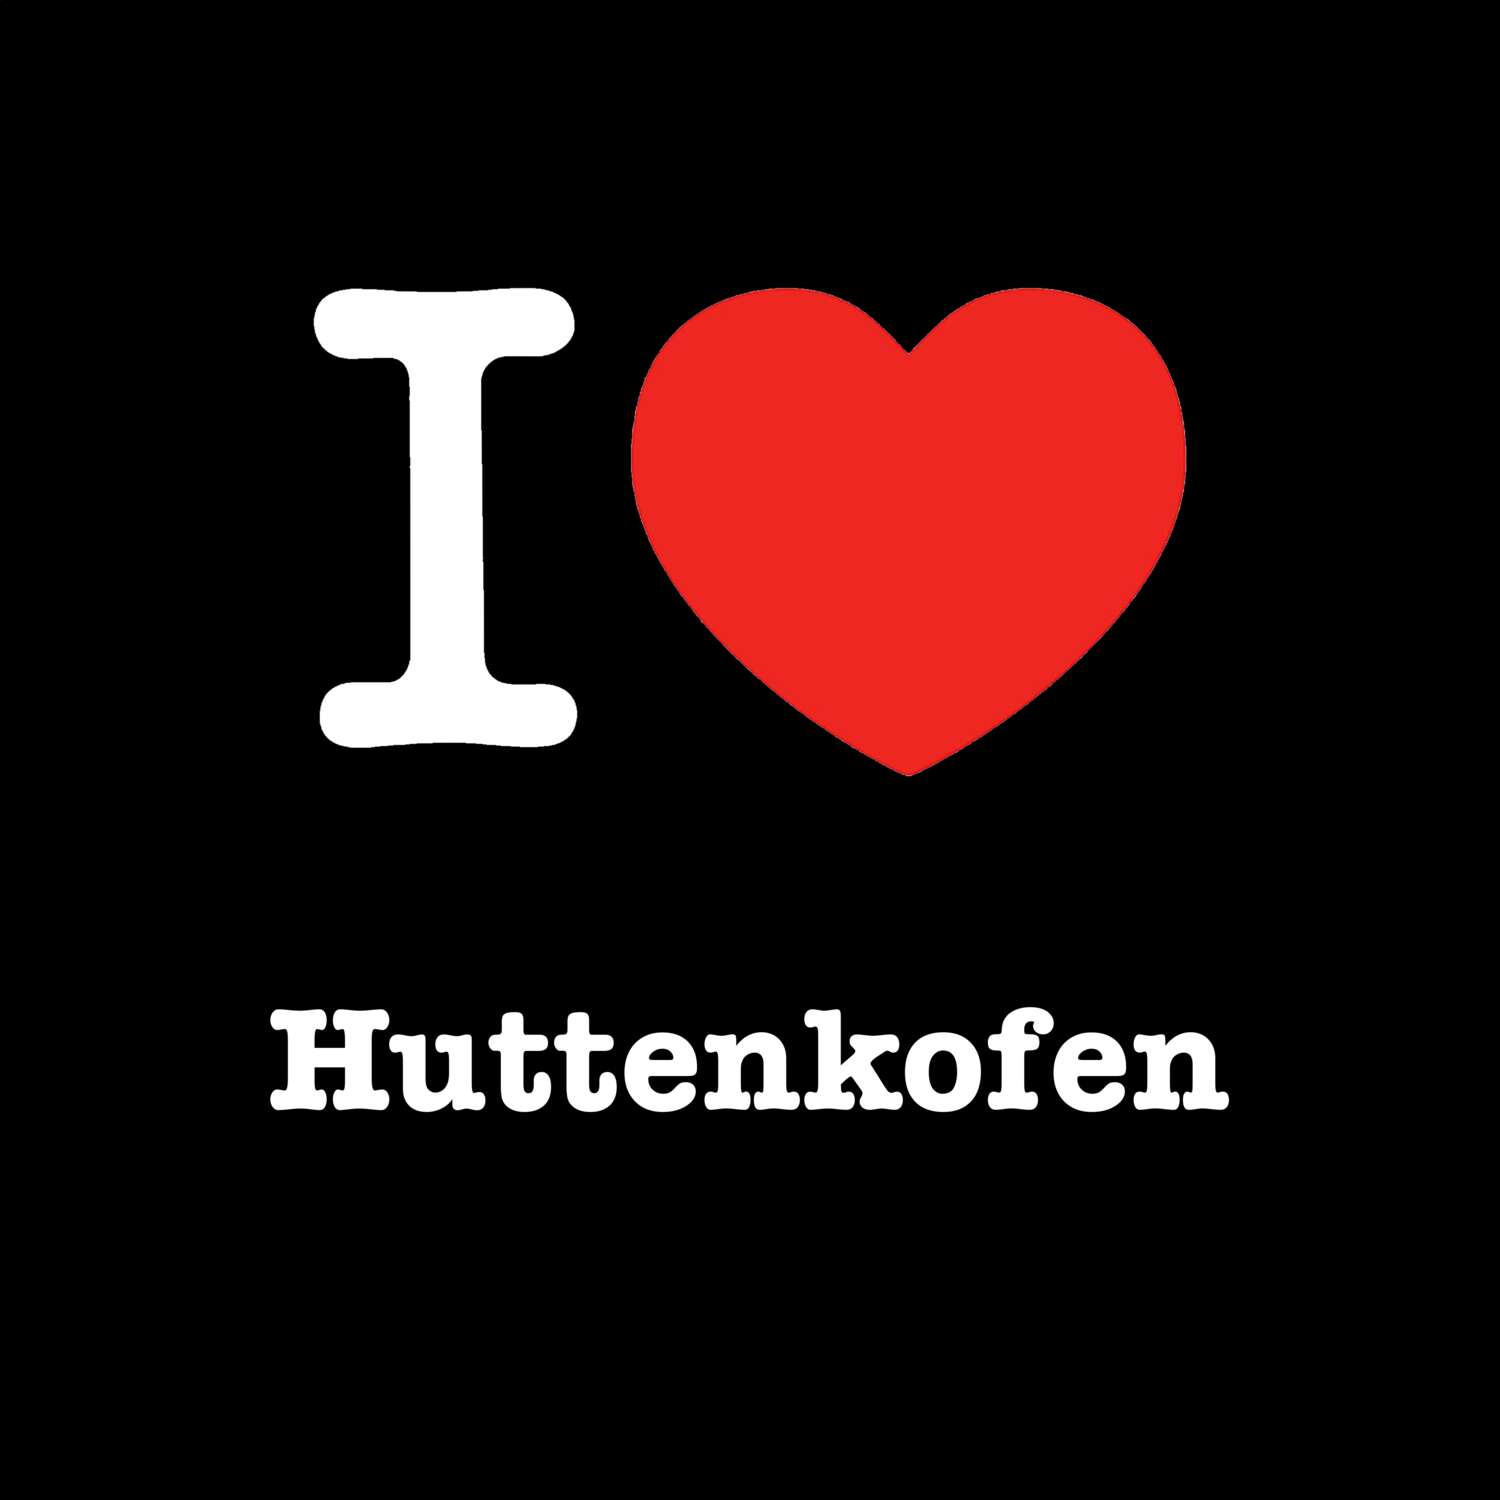 Huttenkofen T-Shirt »I love«